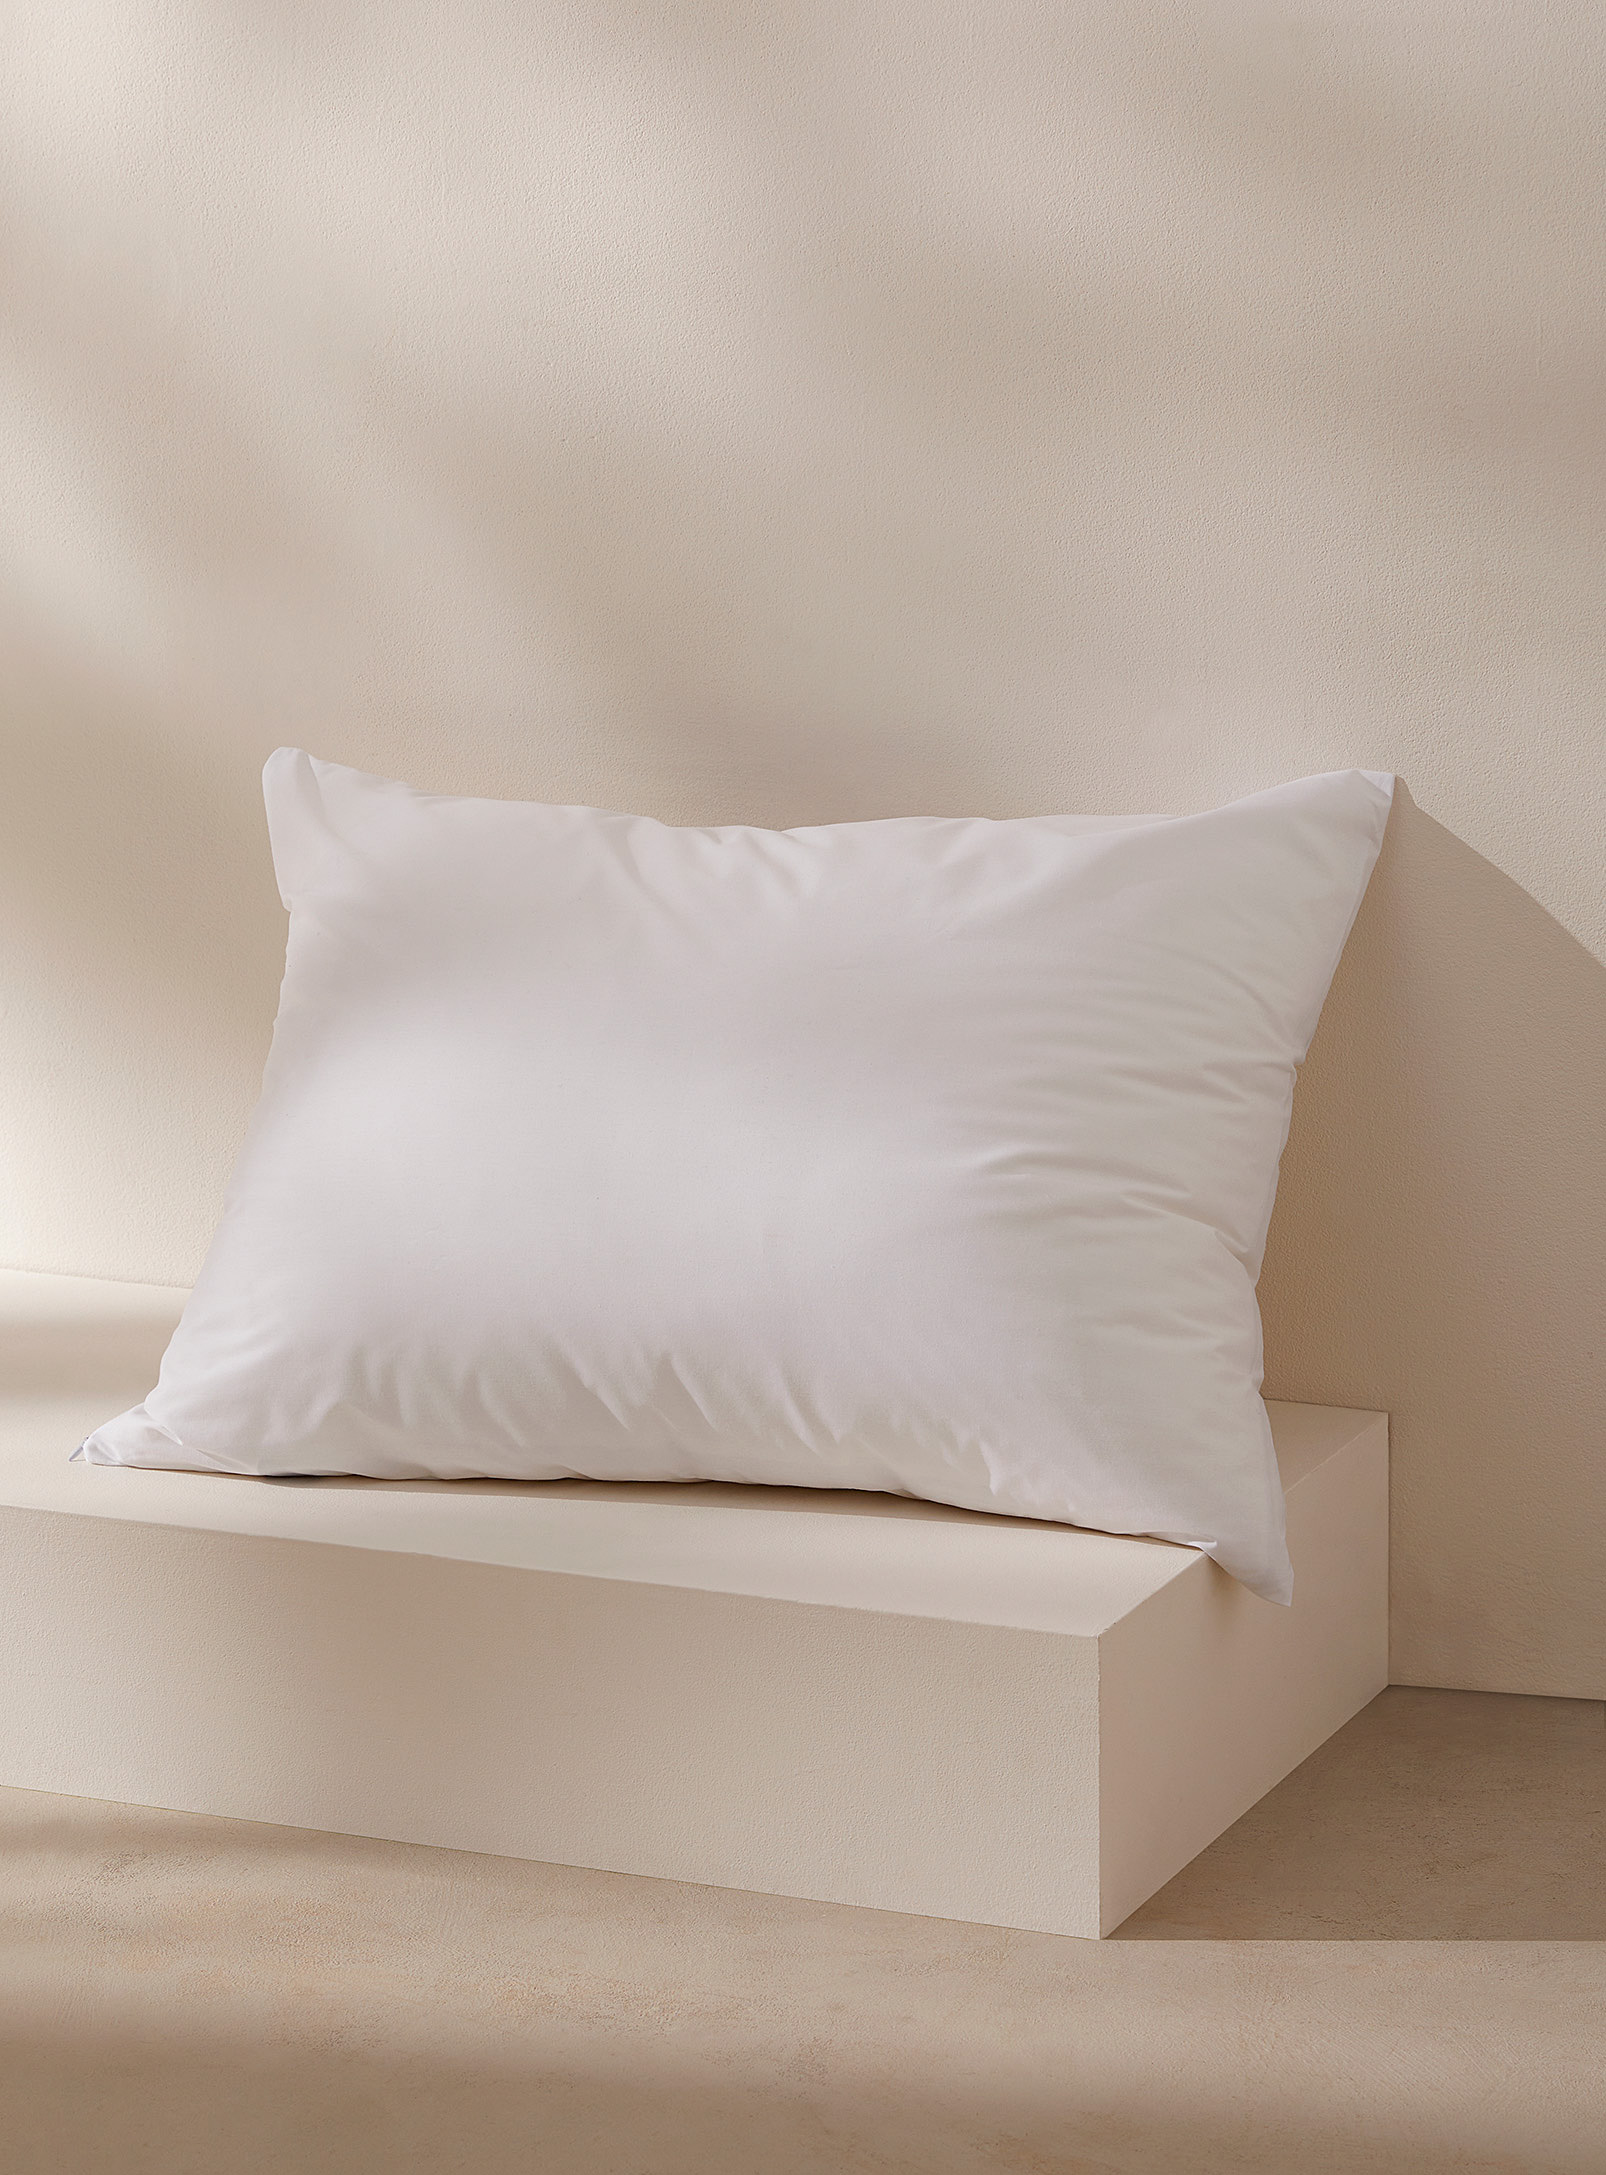 Simons Maison Harmonie Pillow Protector In White